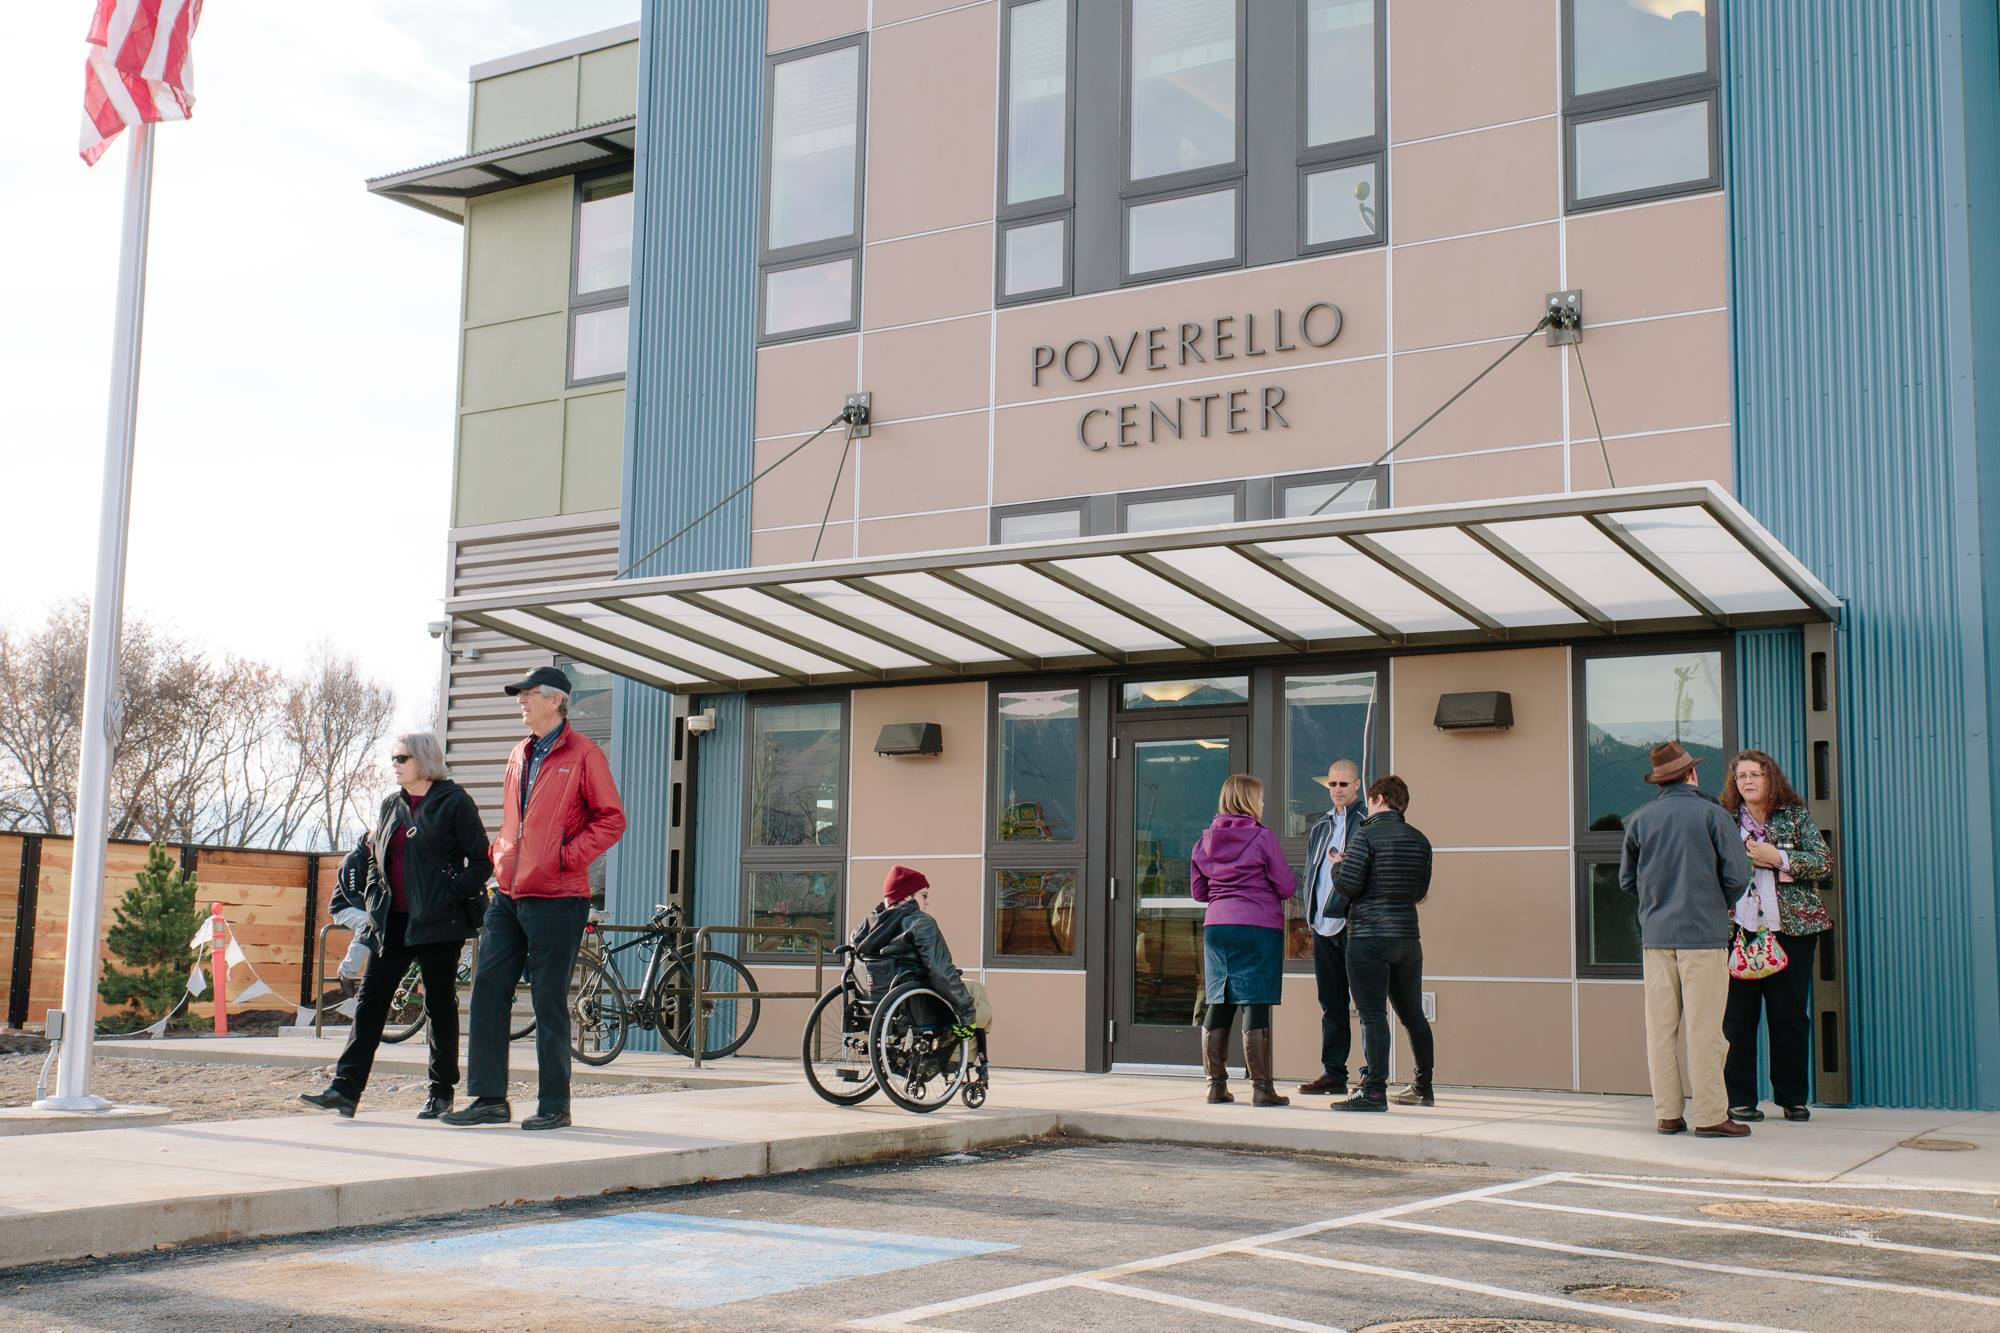 Poverello Center - The Poverello Center